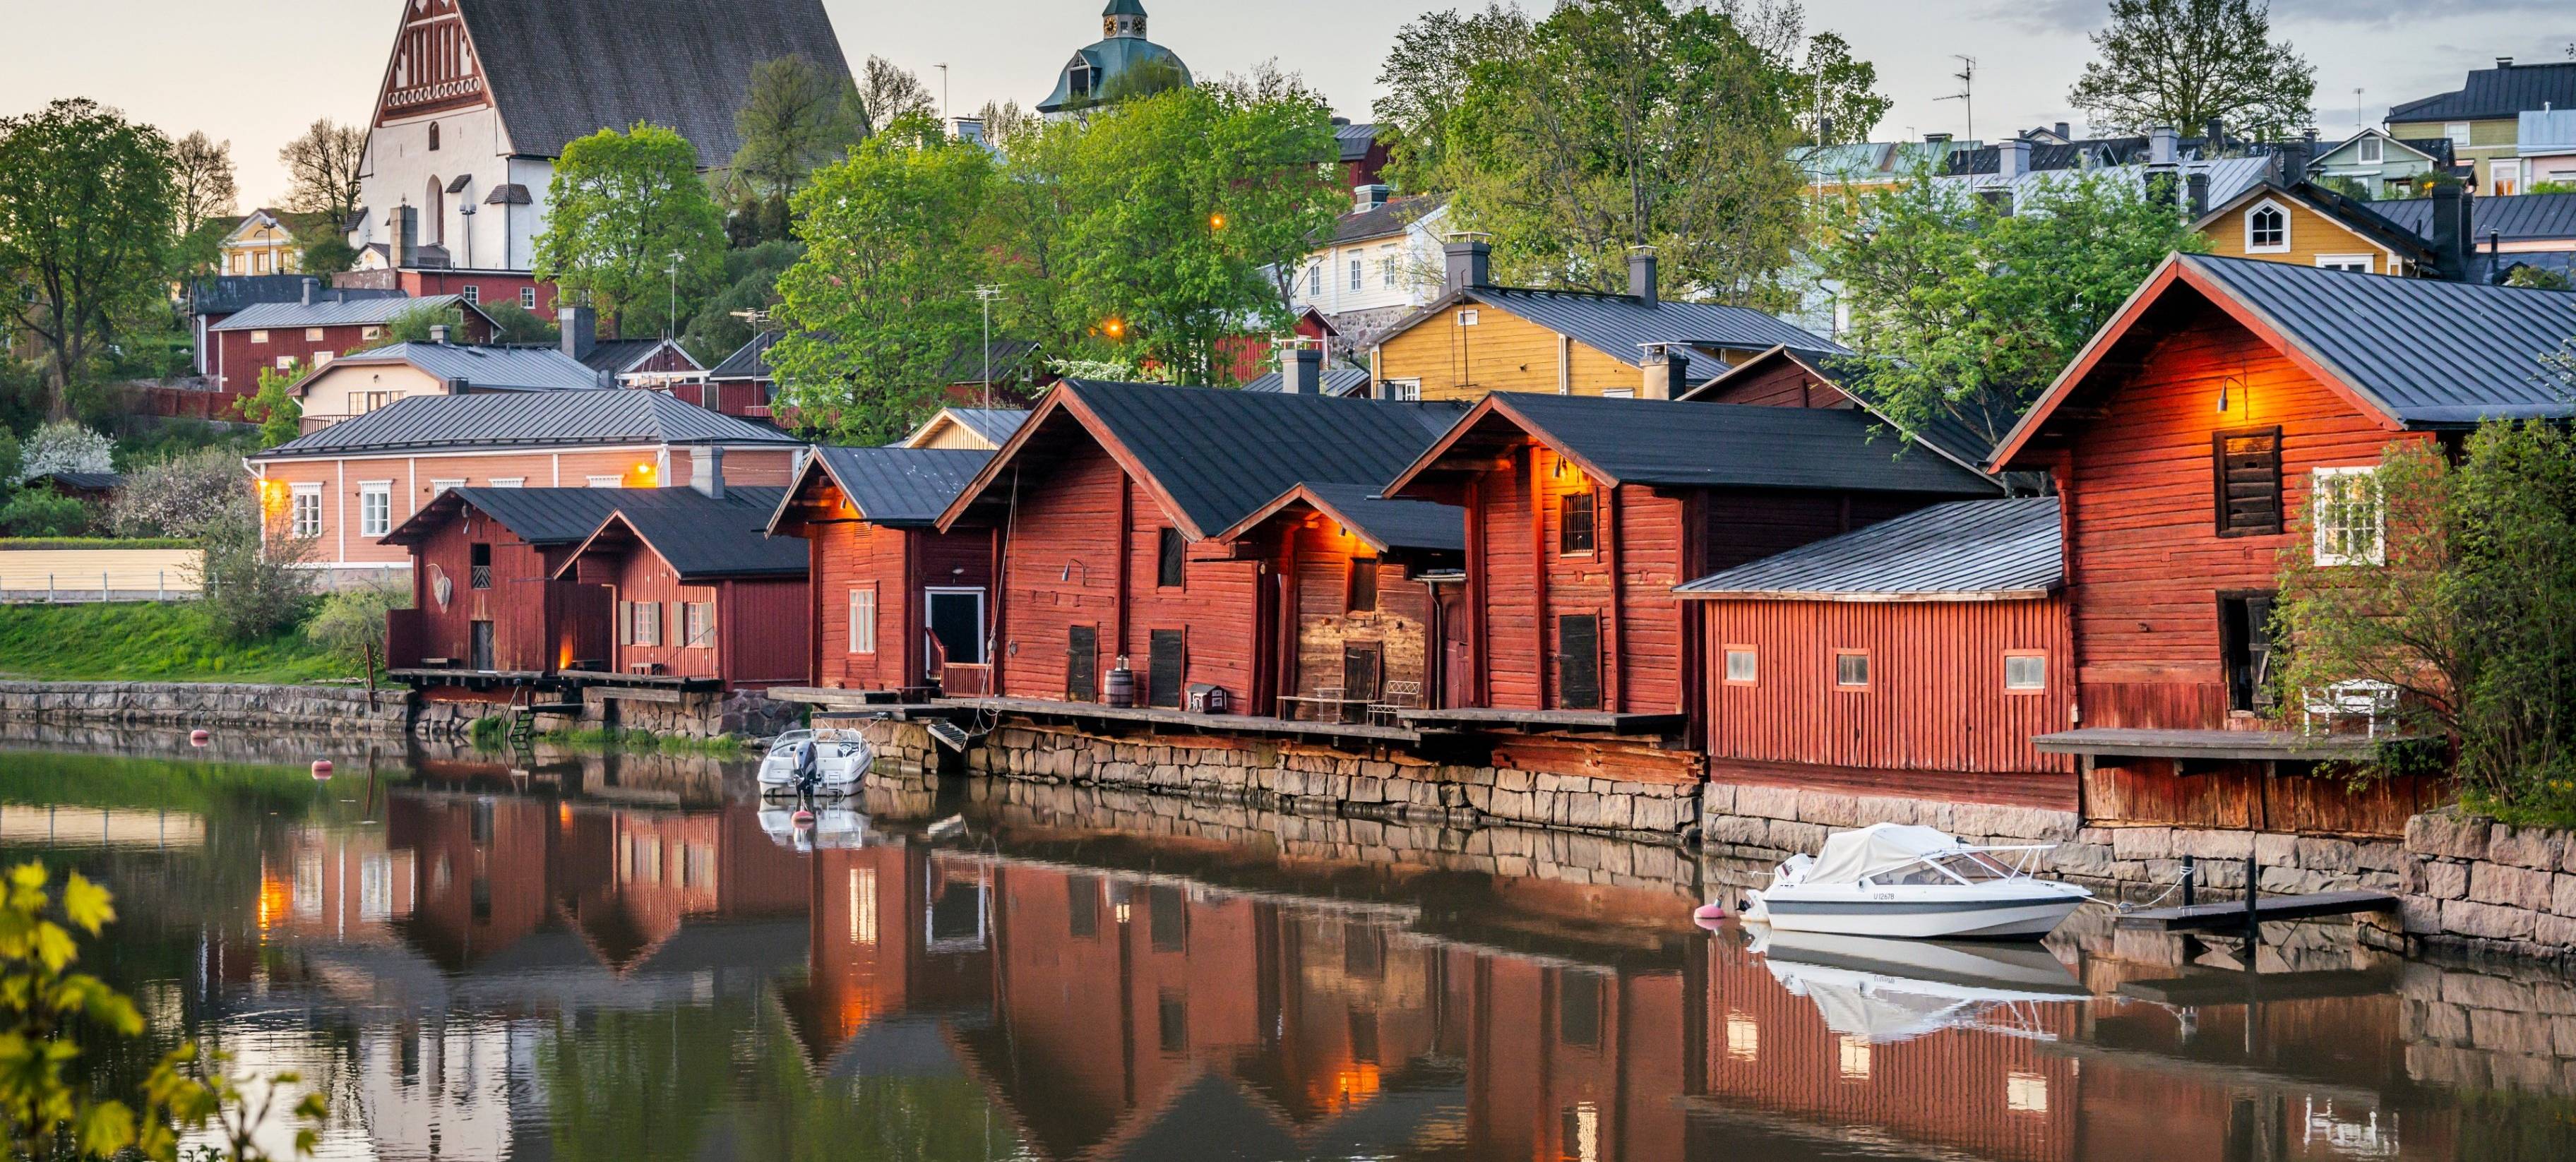 ¡Bienvenidos a Finlandia! Pueblito idílico de Porvoo y estancia en una casa costeña típica